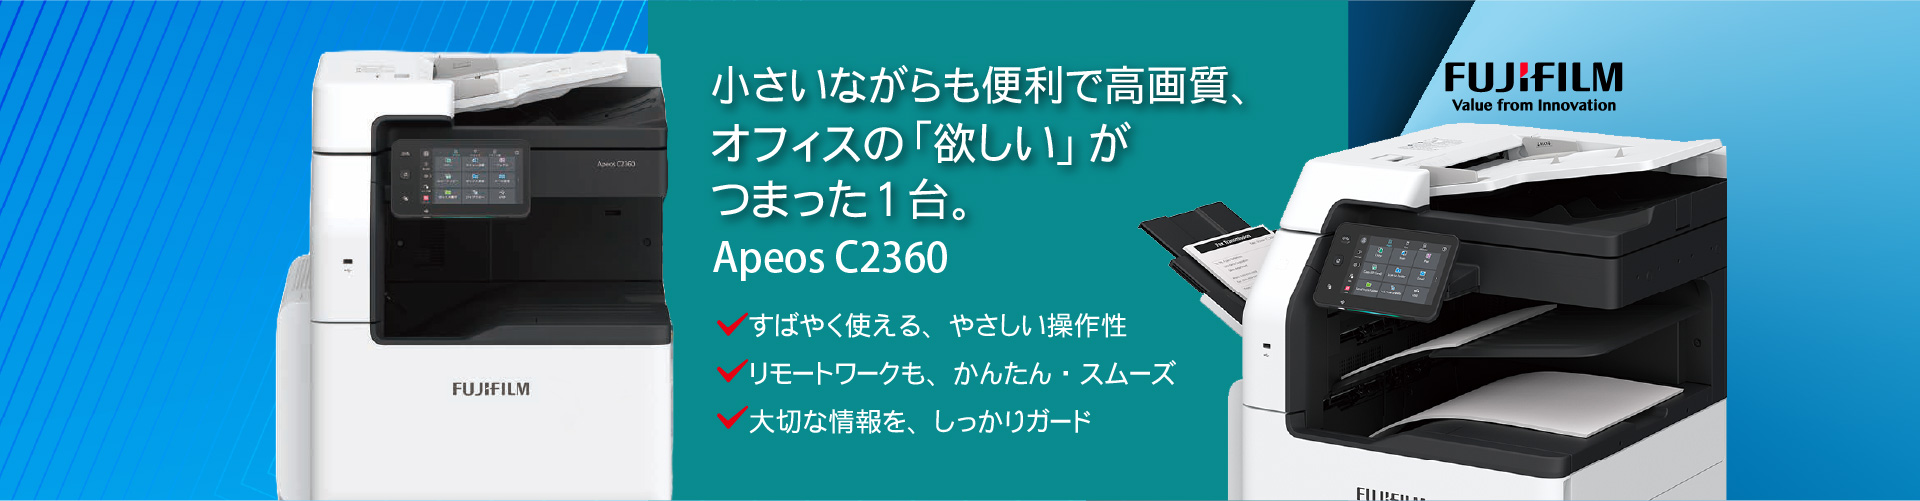 オフィス向け複合機！
ApeosPort C2360 頼れるビジネスパートナー、身近なカラー複合機。